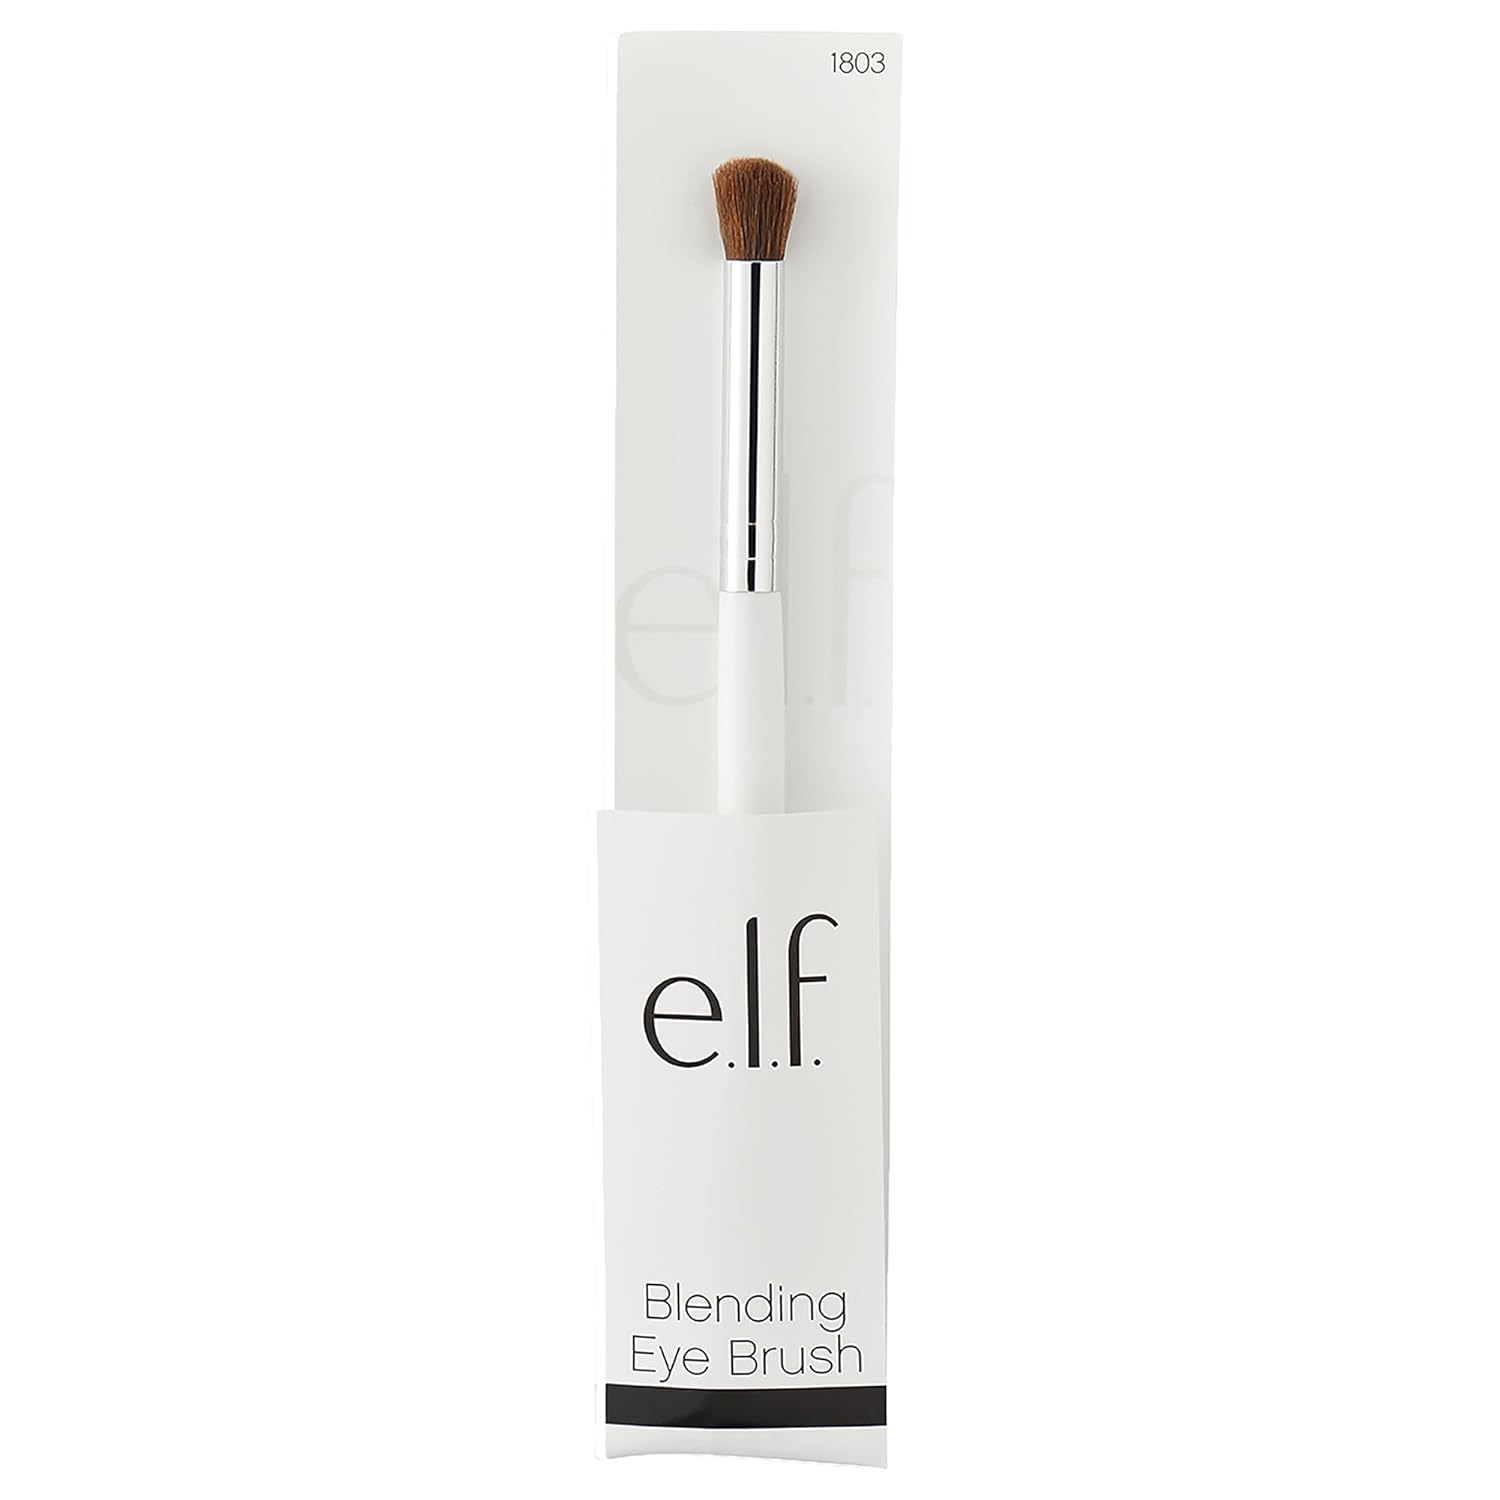 ELF Blending Eye Brush Softens Dramatic Edges